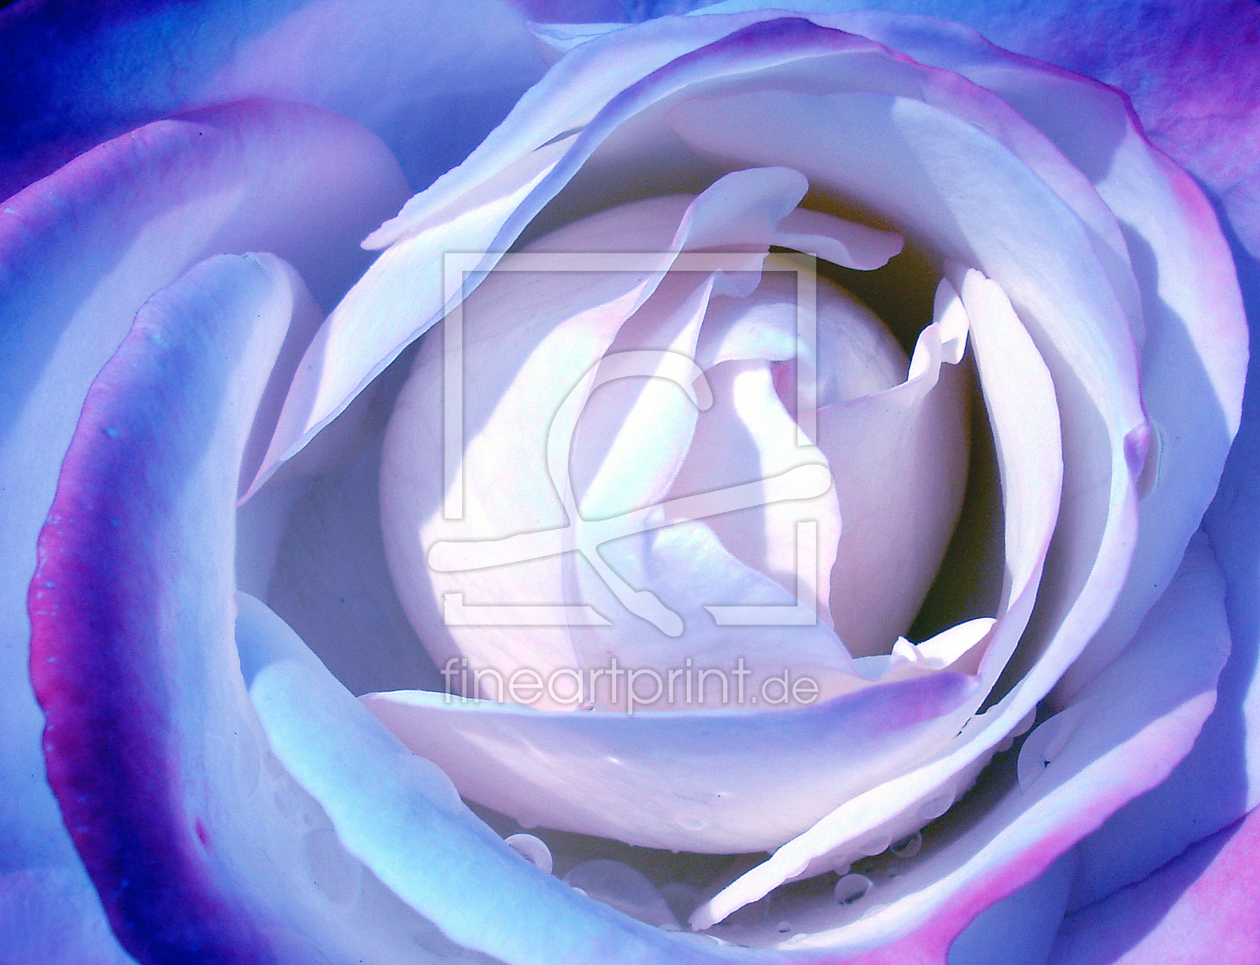 Bild-Nr.: 9865152 blaue Rose erstellt von Level60